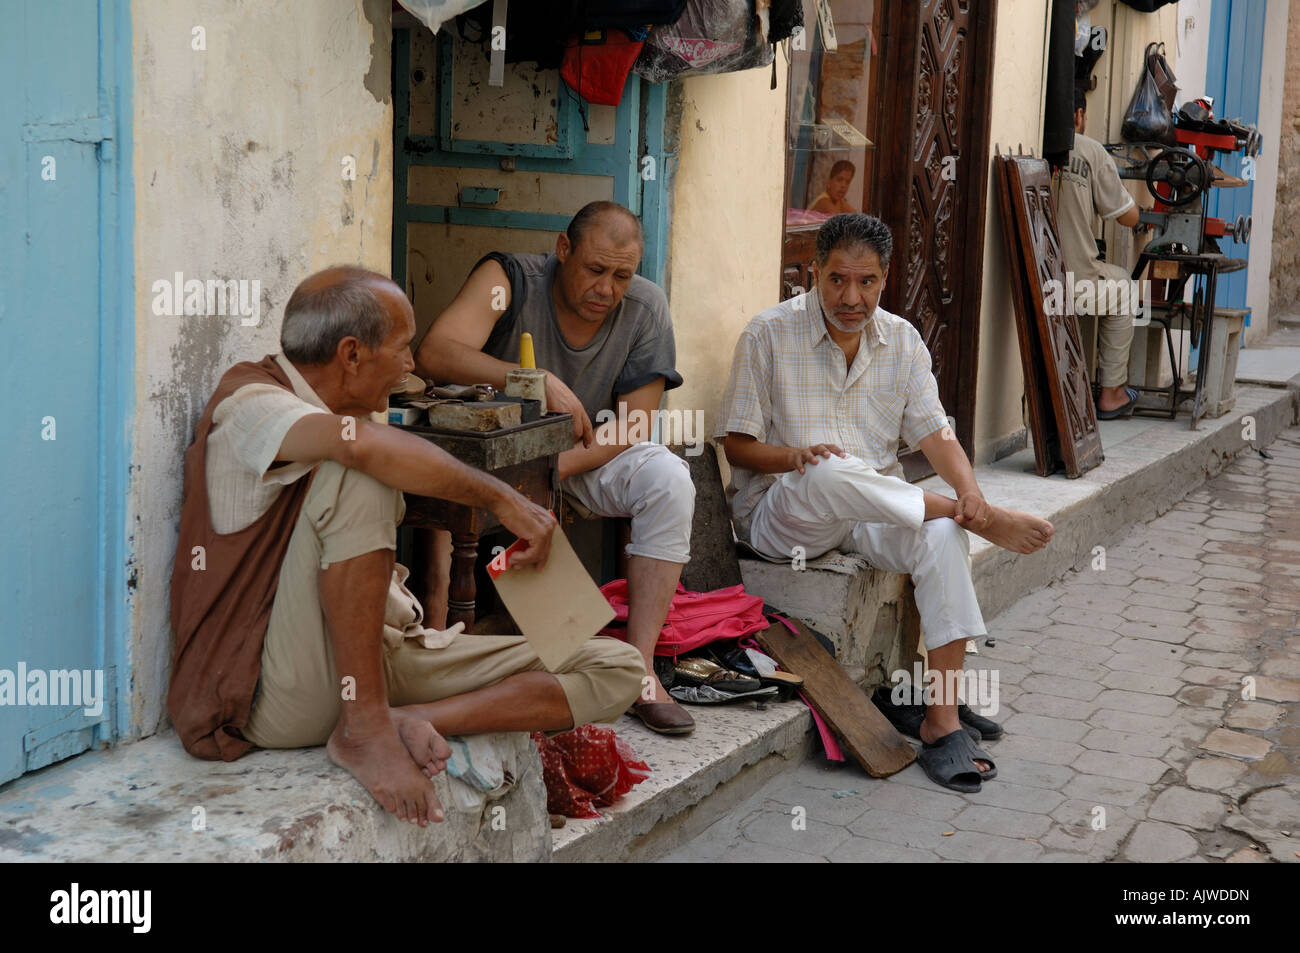 Groupe d'hommes discutant l'extérieur d'un magasin de cuir à Kairouan Tunisie Banque D'Images